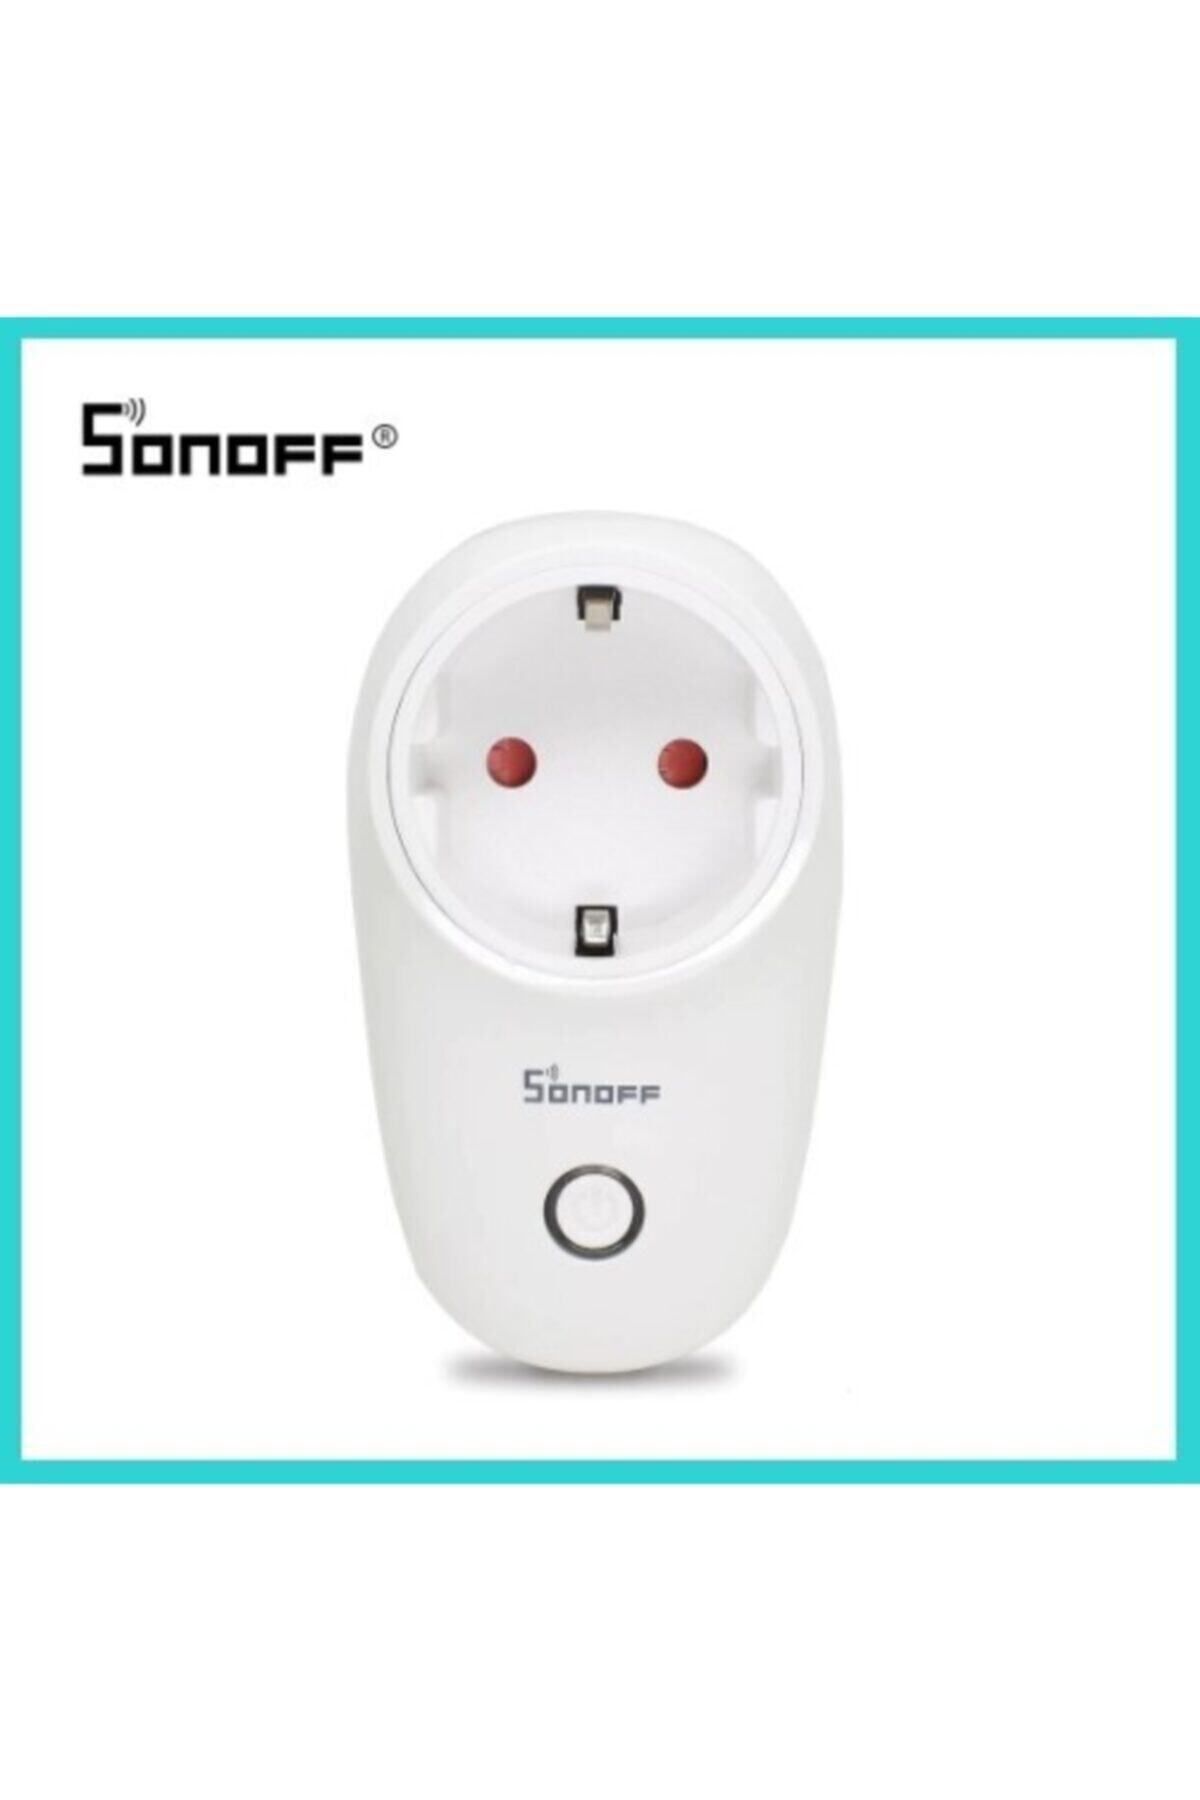 Sonoff S26 Wireless Akıllı Priz, Ewelink Ile Alexa, Google Home Ve Google Nest Uyumlu